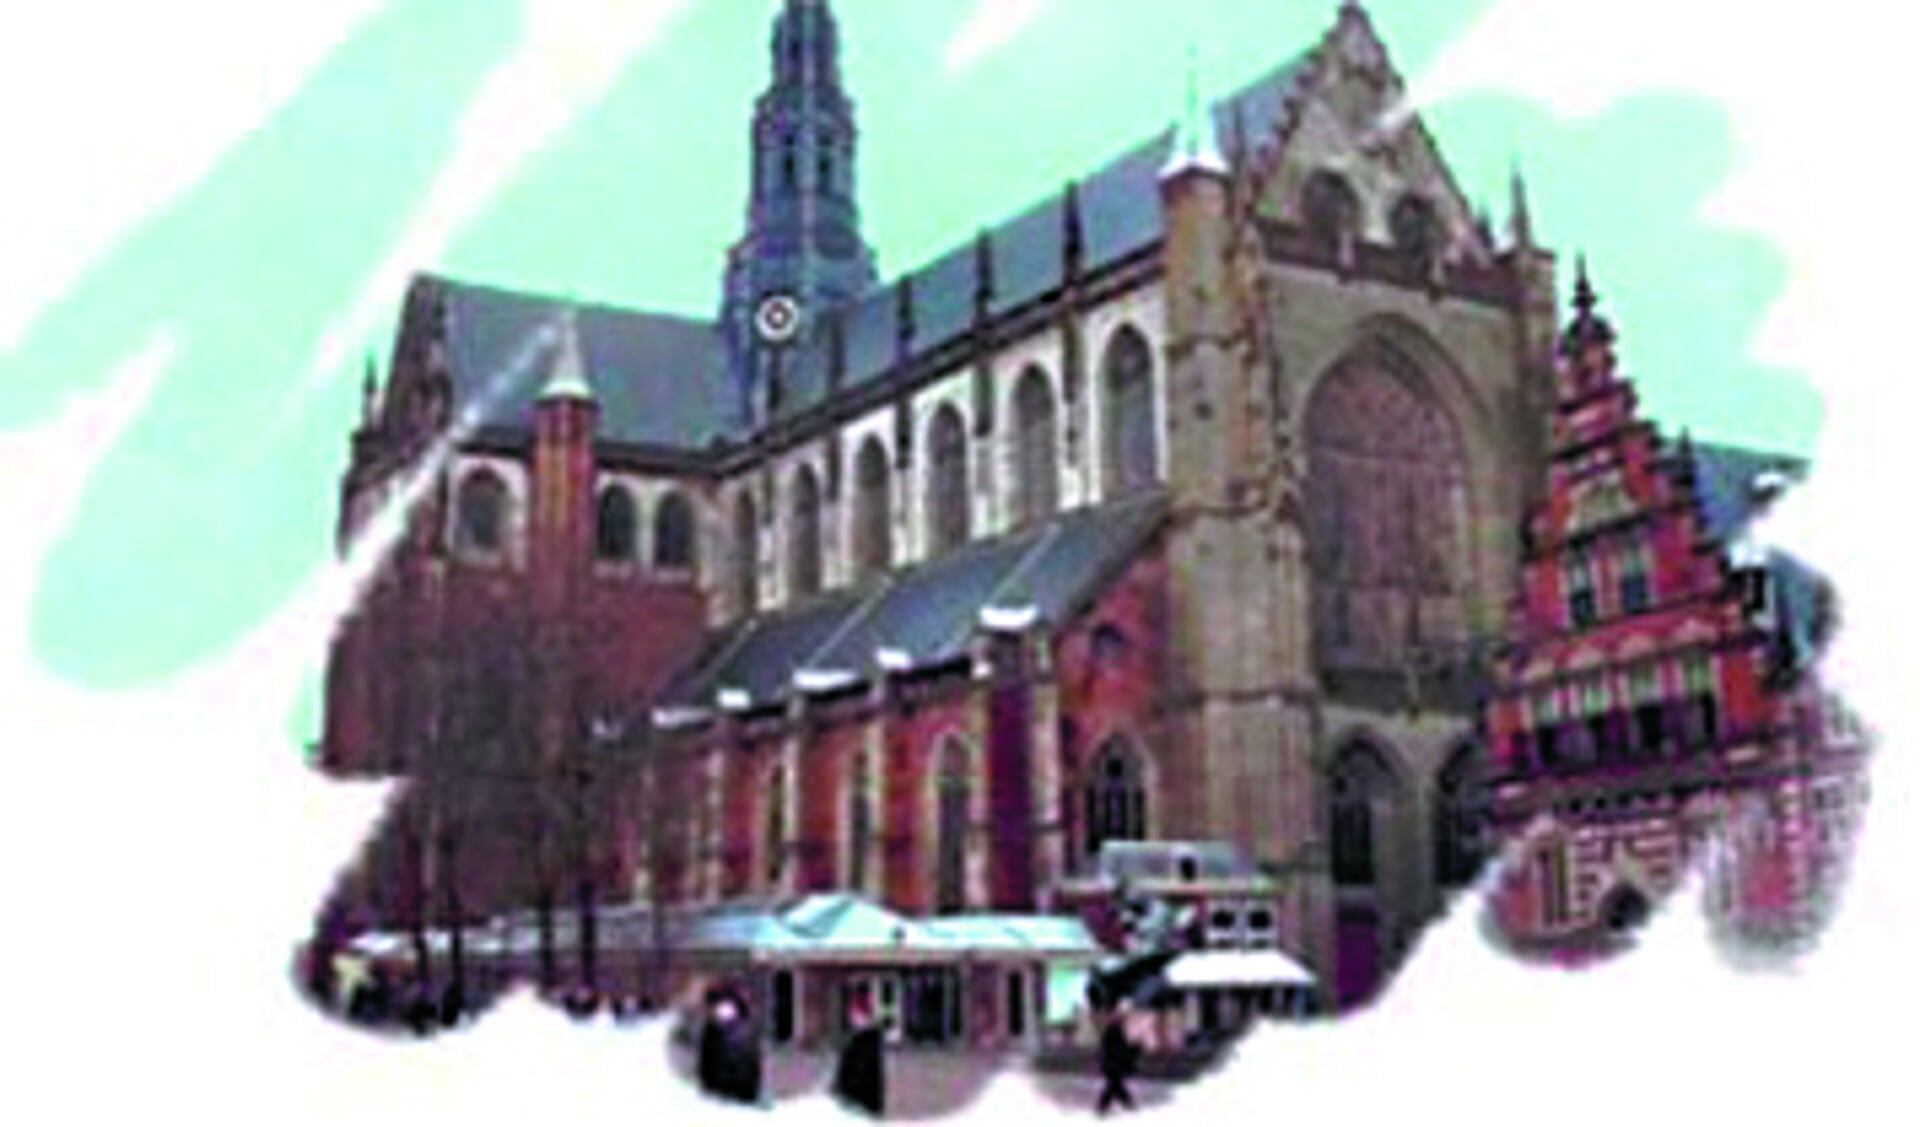 De Grote of St. Bavokerk aan de Grote Markt. (foto aangeleverd)